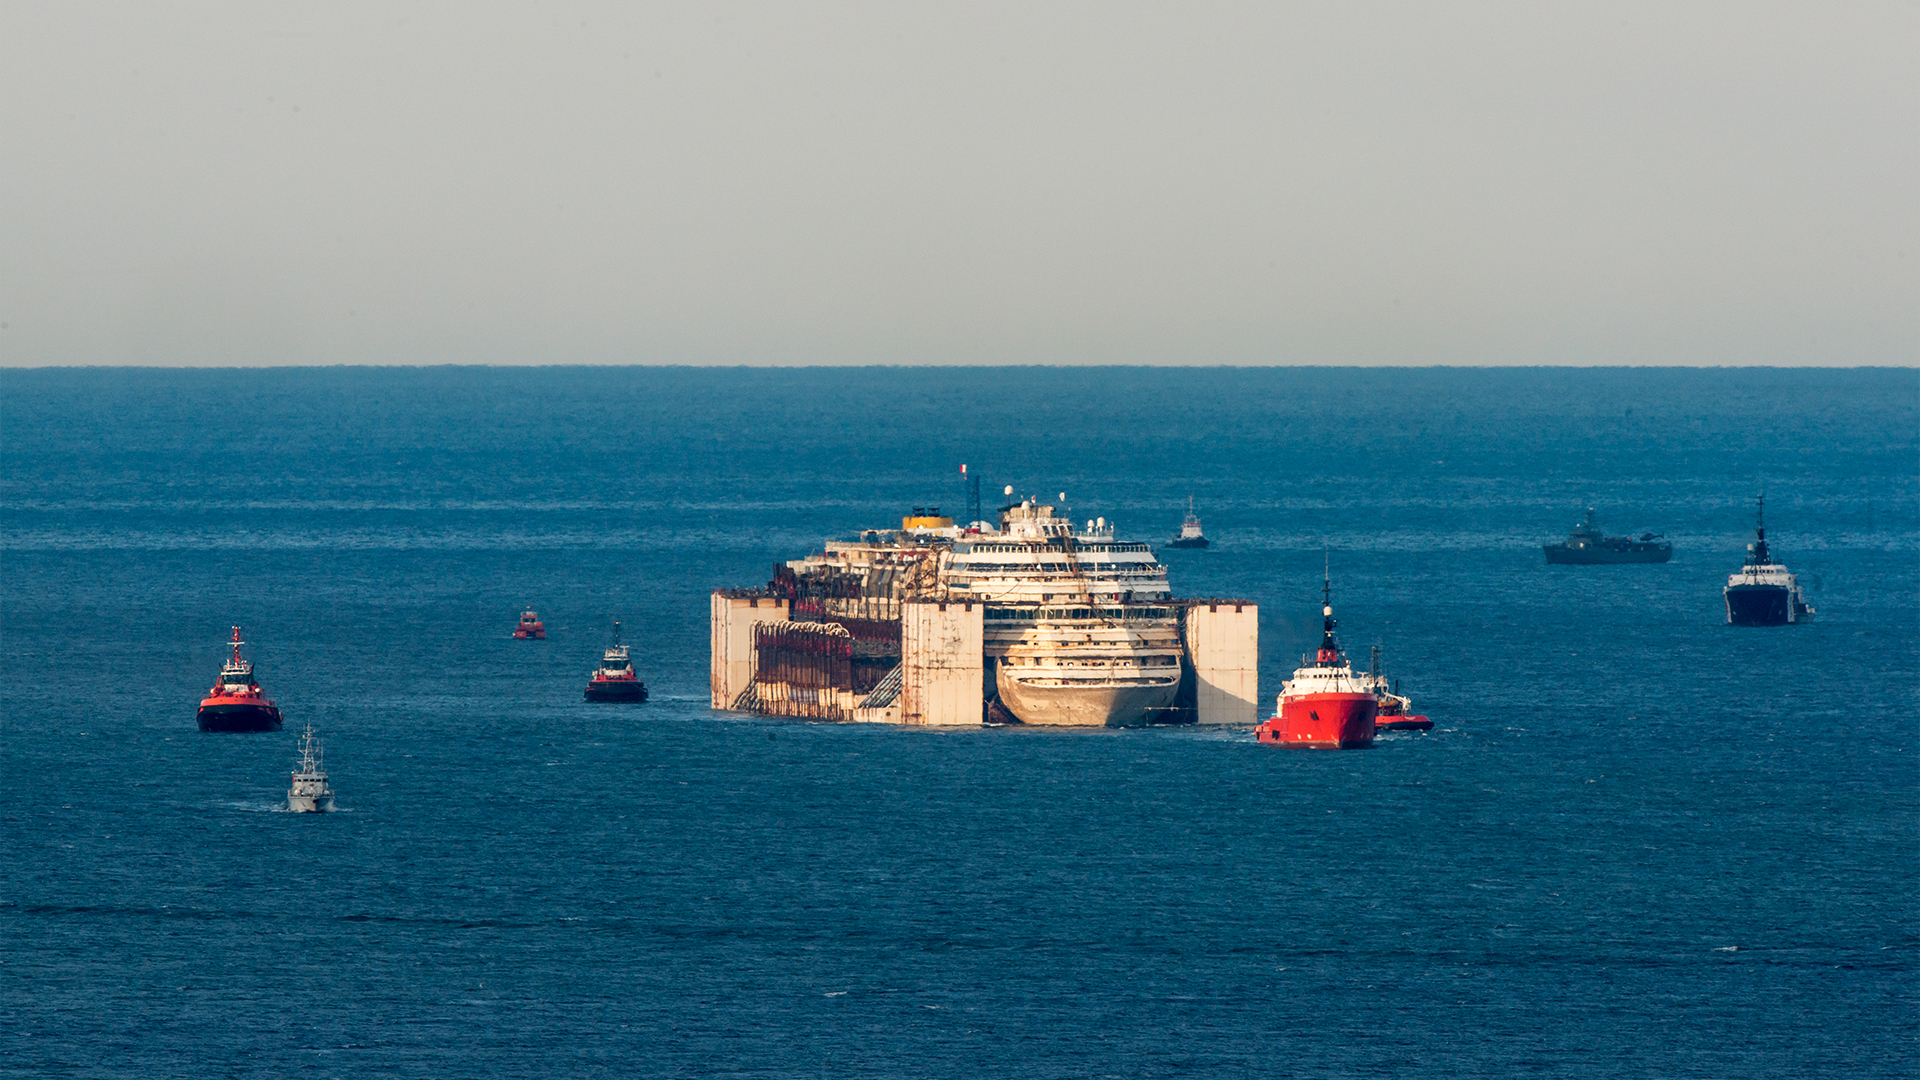 Alba del 27/07/2014 la Costa Concordia entra nel porto di Genova Prà